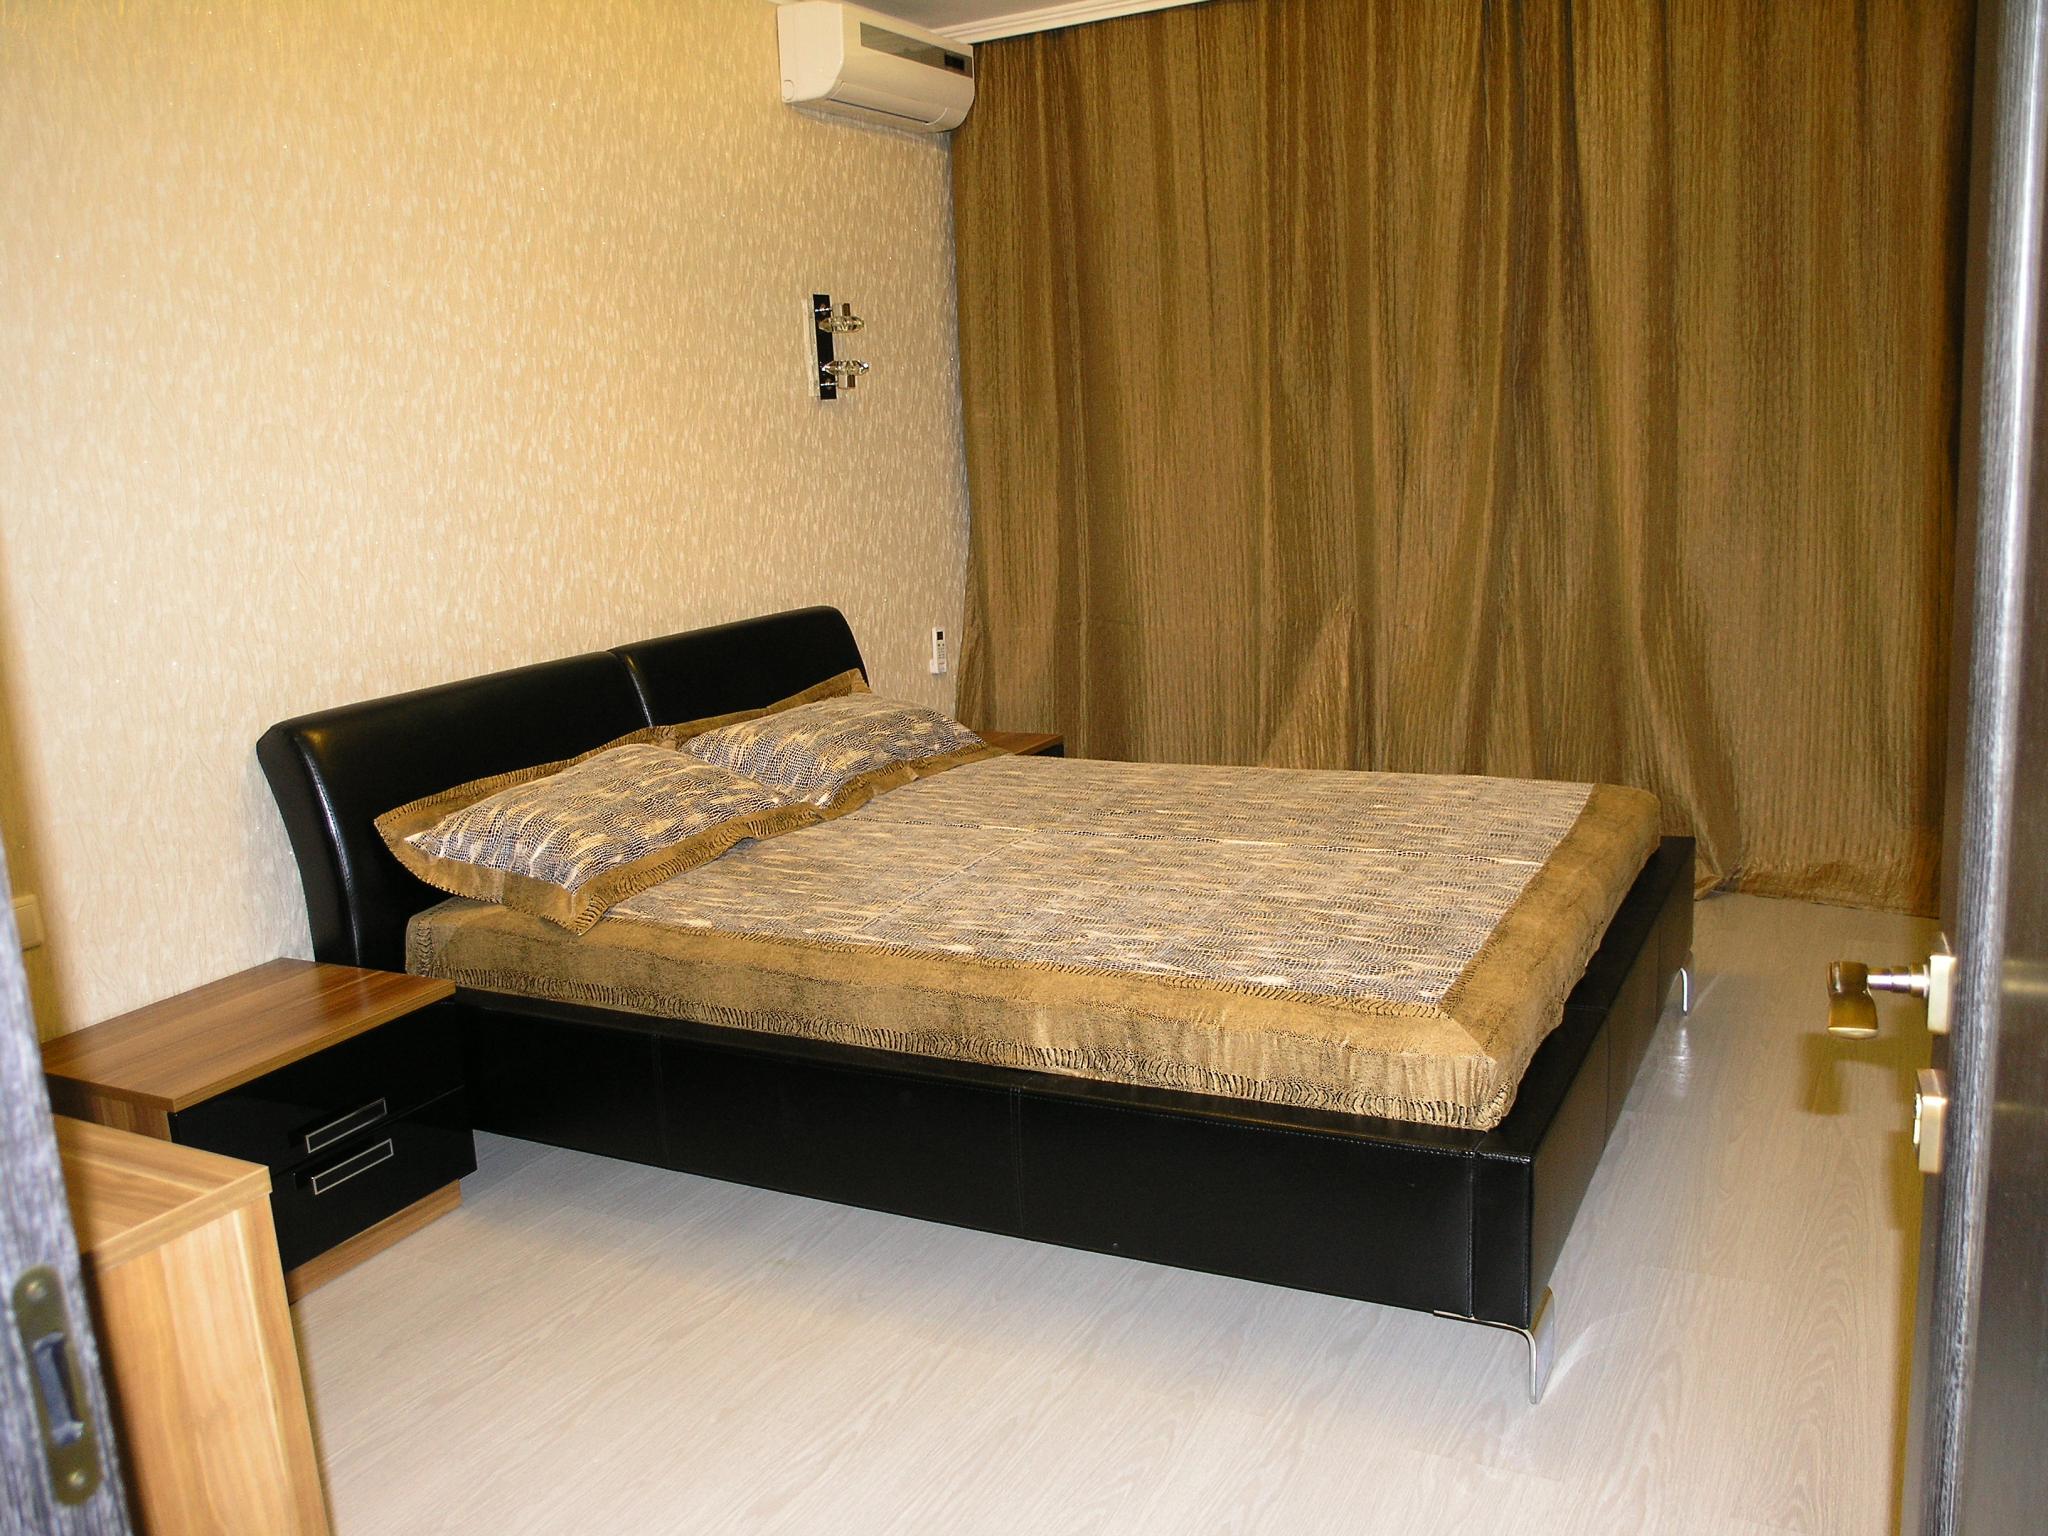 Квартира 4 комнатная ульяновск